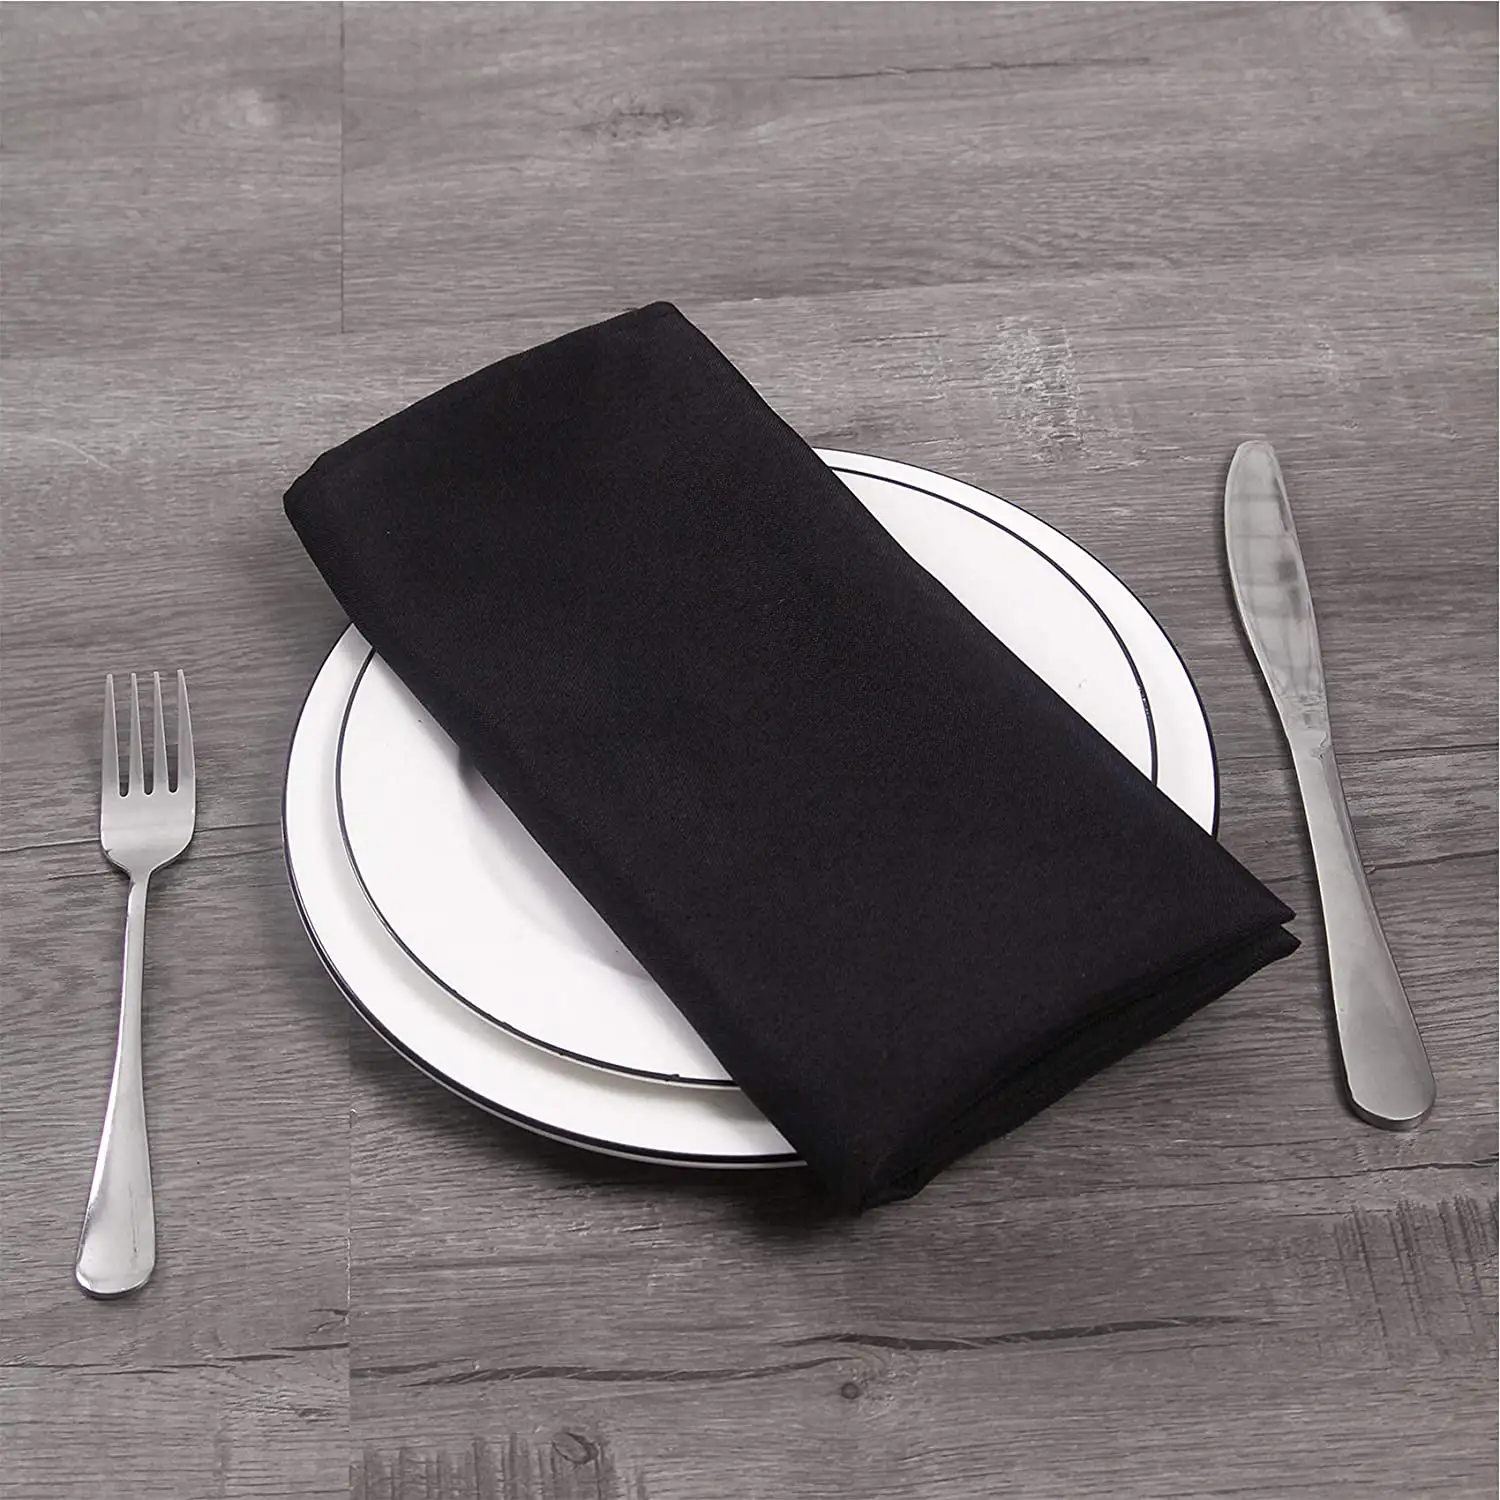 Özel siyah polyester restoran akşam yemeği düğün dekorasyon için parti bez masa peçeteler